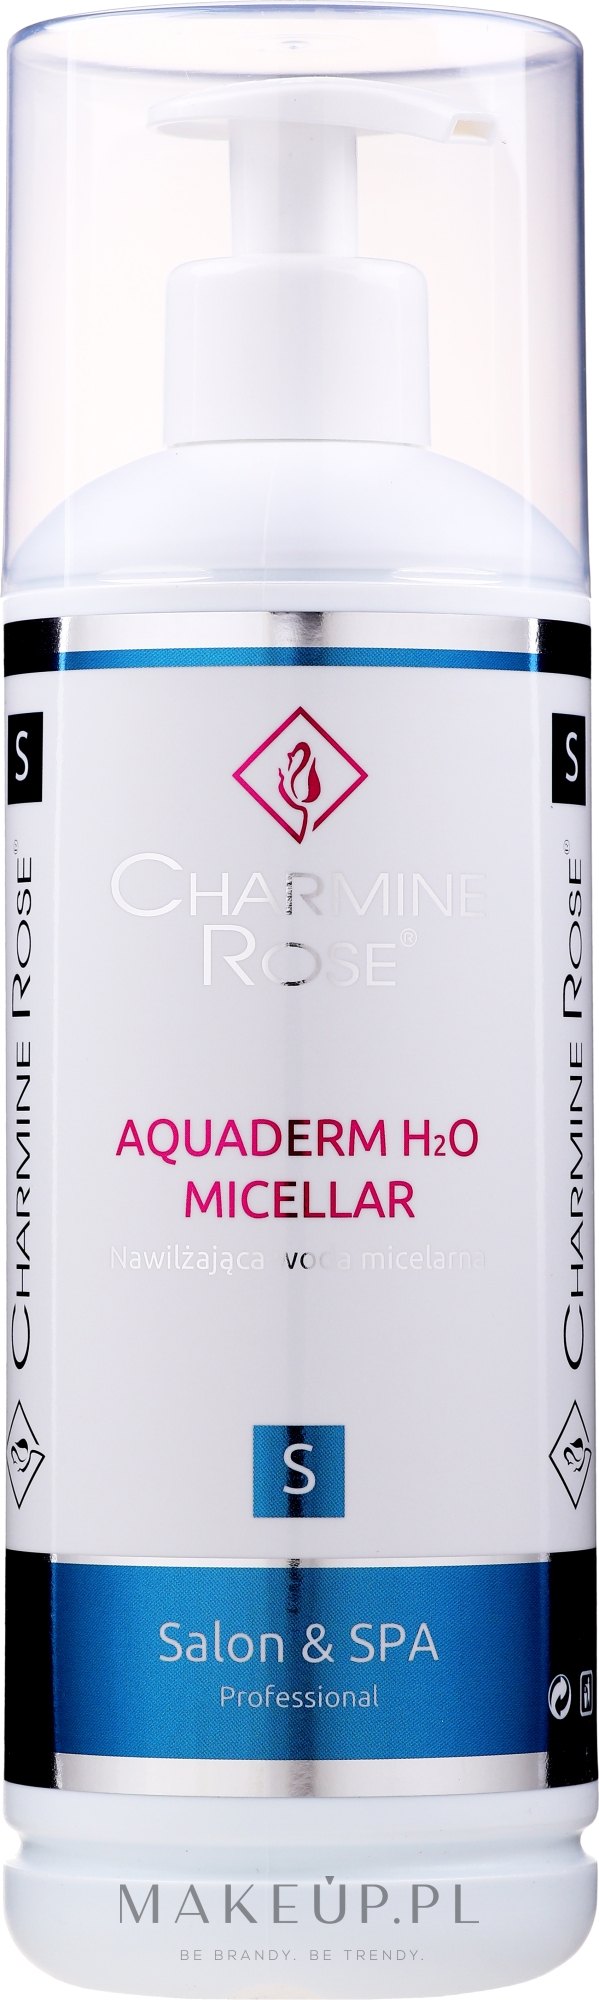 Nawilżająca woda micelarna do twarzy - Charmine Rose Aquaderm H2O Micellar — Zdjęcie 200 ml